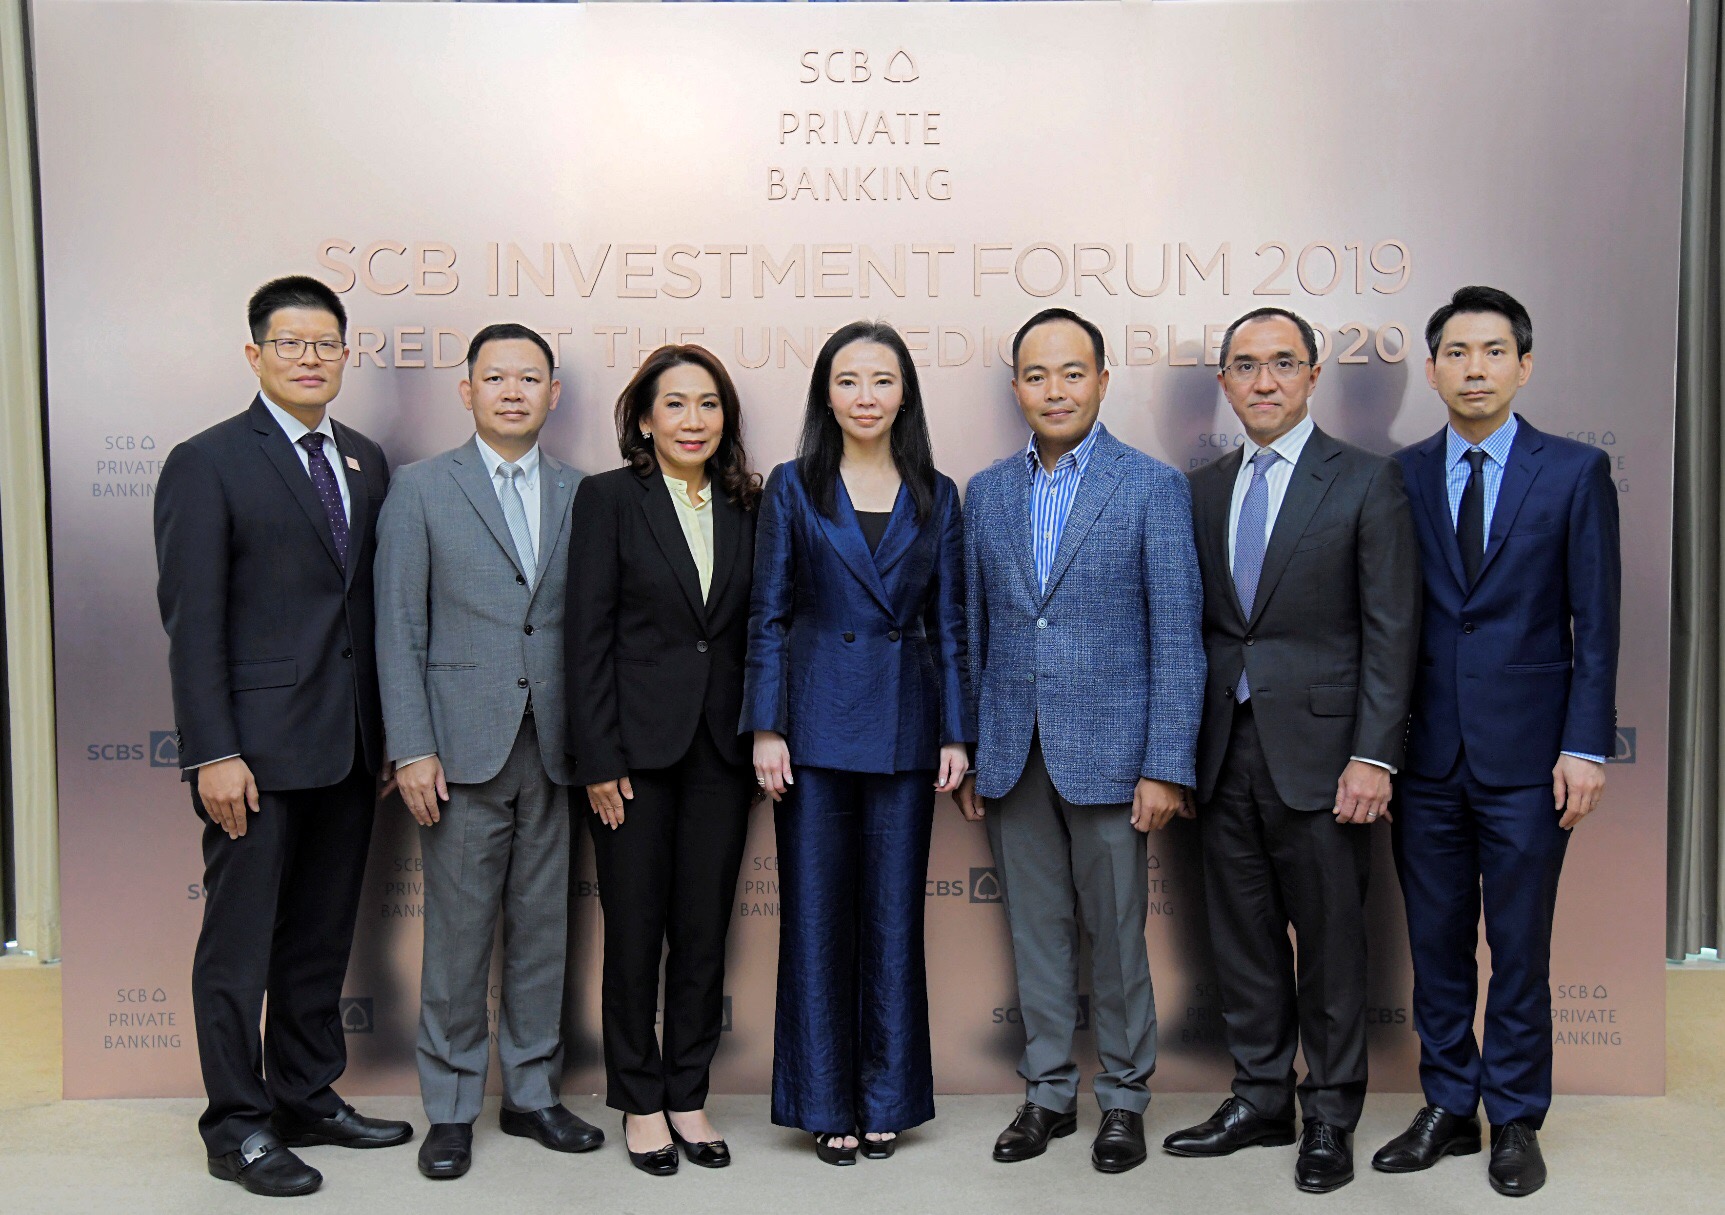 กลุ่มธนาคารไทยพาณิชย์ สัมมนาต่อยอดความรู้ด้านการลงทุน “SCB Investment Forum 2019” เสริมแกร่งความรู้ลูกค้าเวลธ์